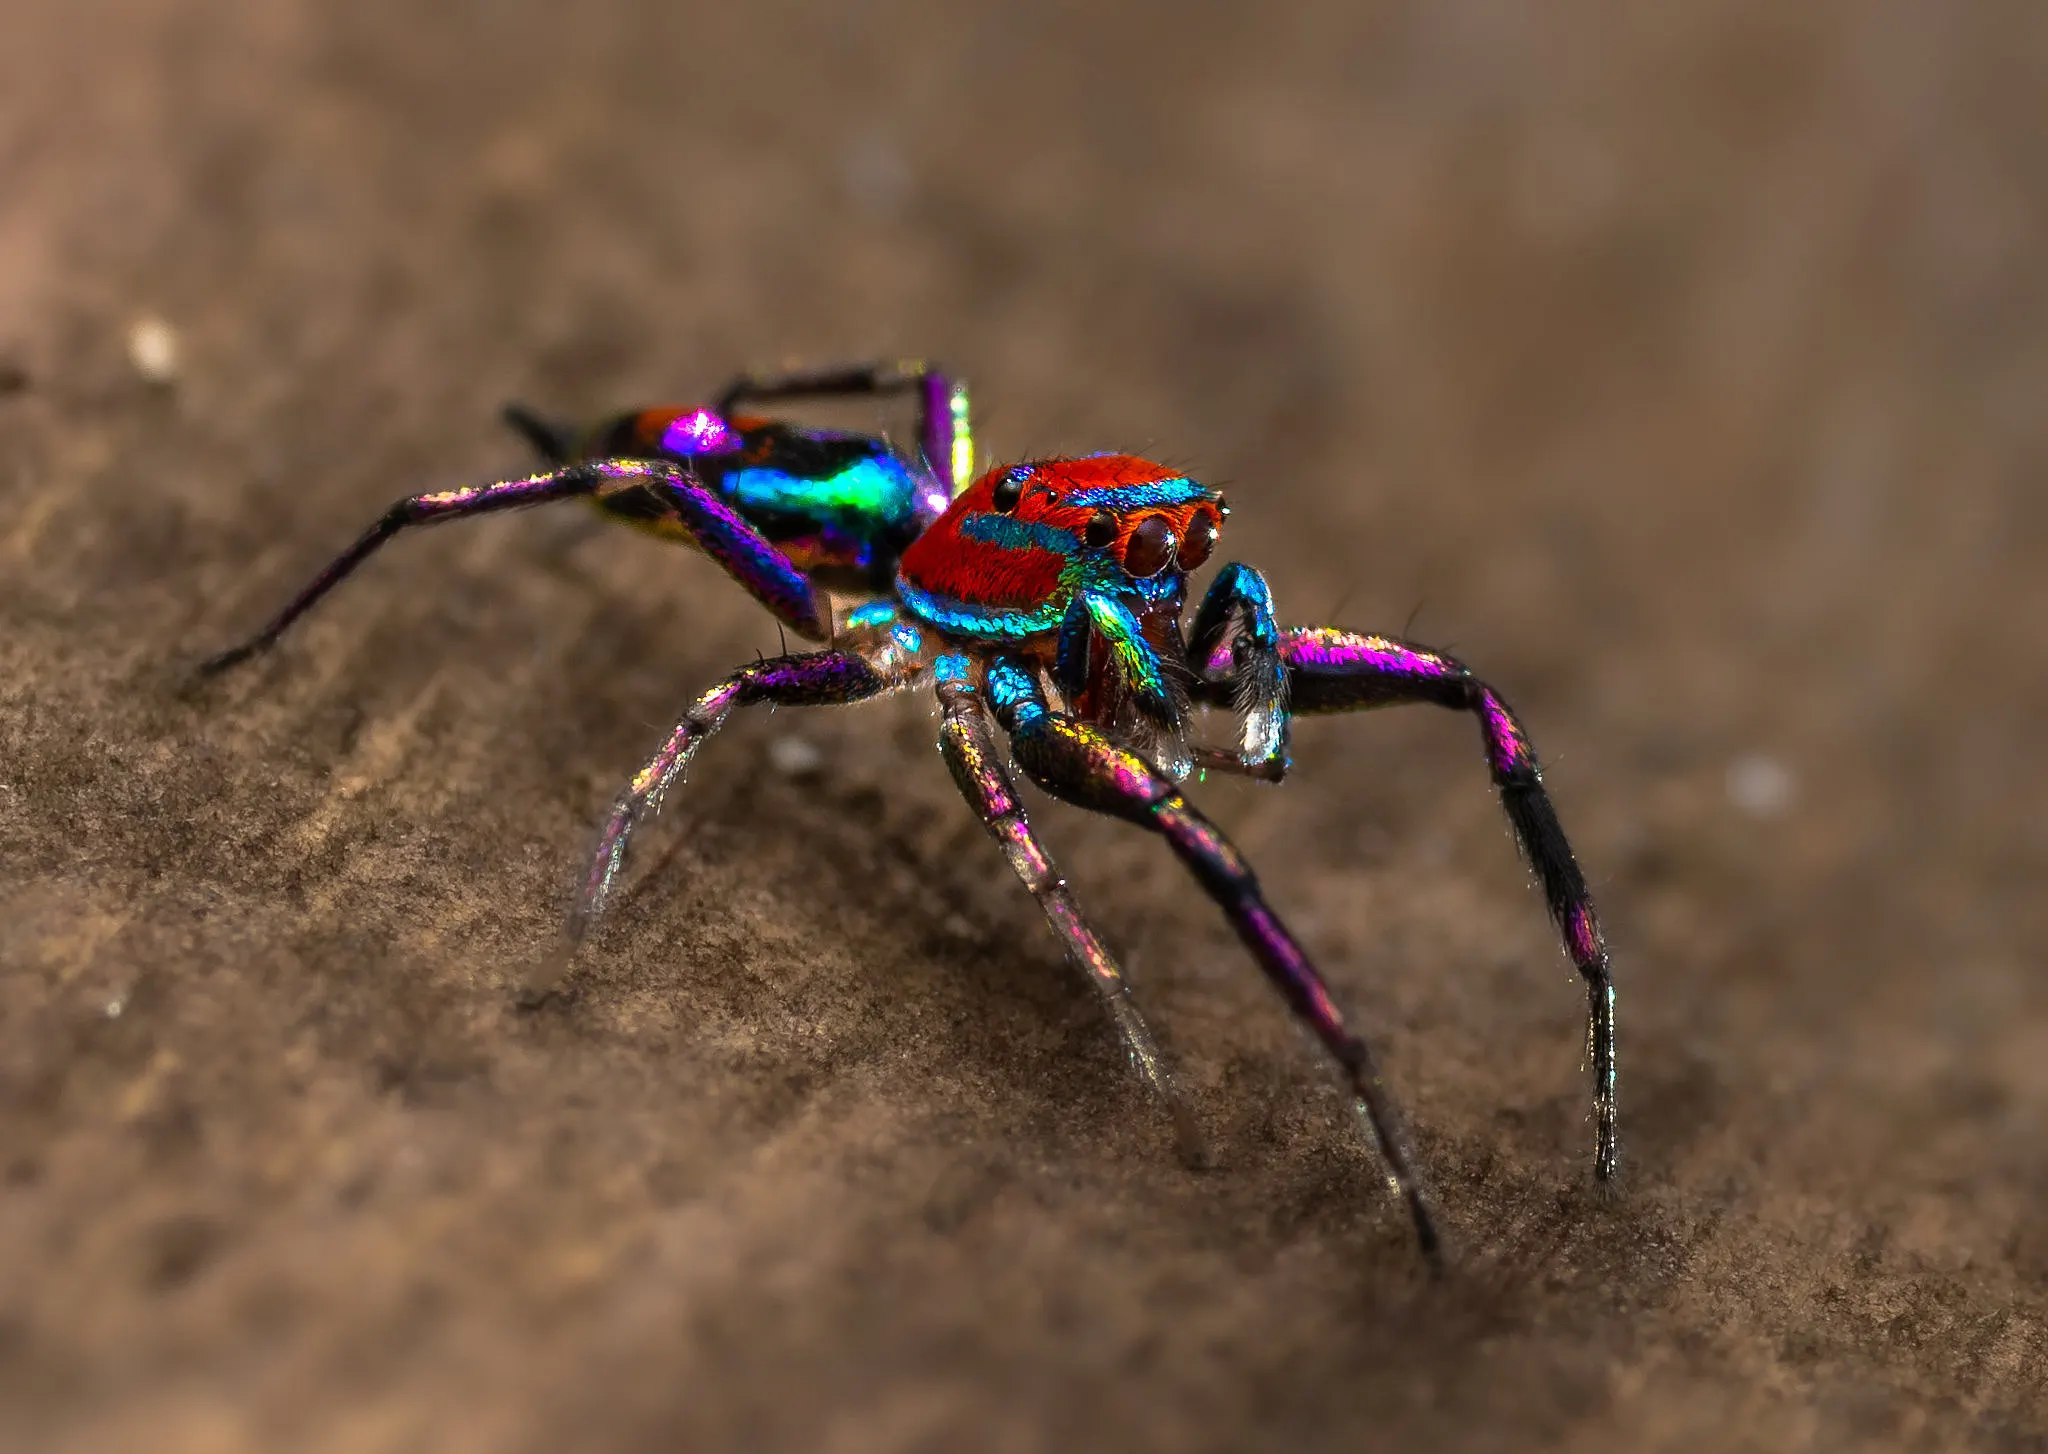 Las arañas saltarinas son un grupo de arañas cazadoras pequeñas que se distinguen por su agilidad para saltar, una excelente visión y variedad de coloraciones.